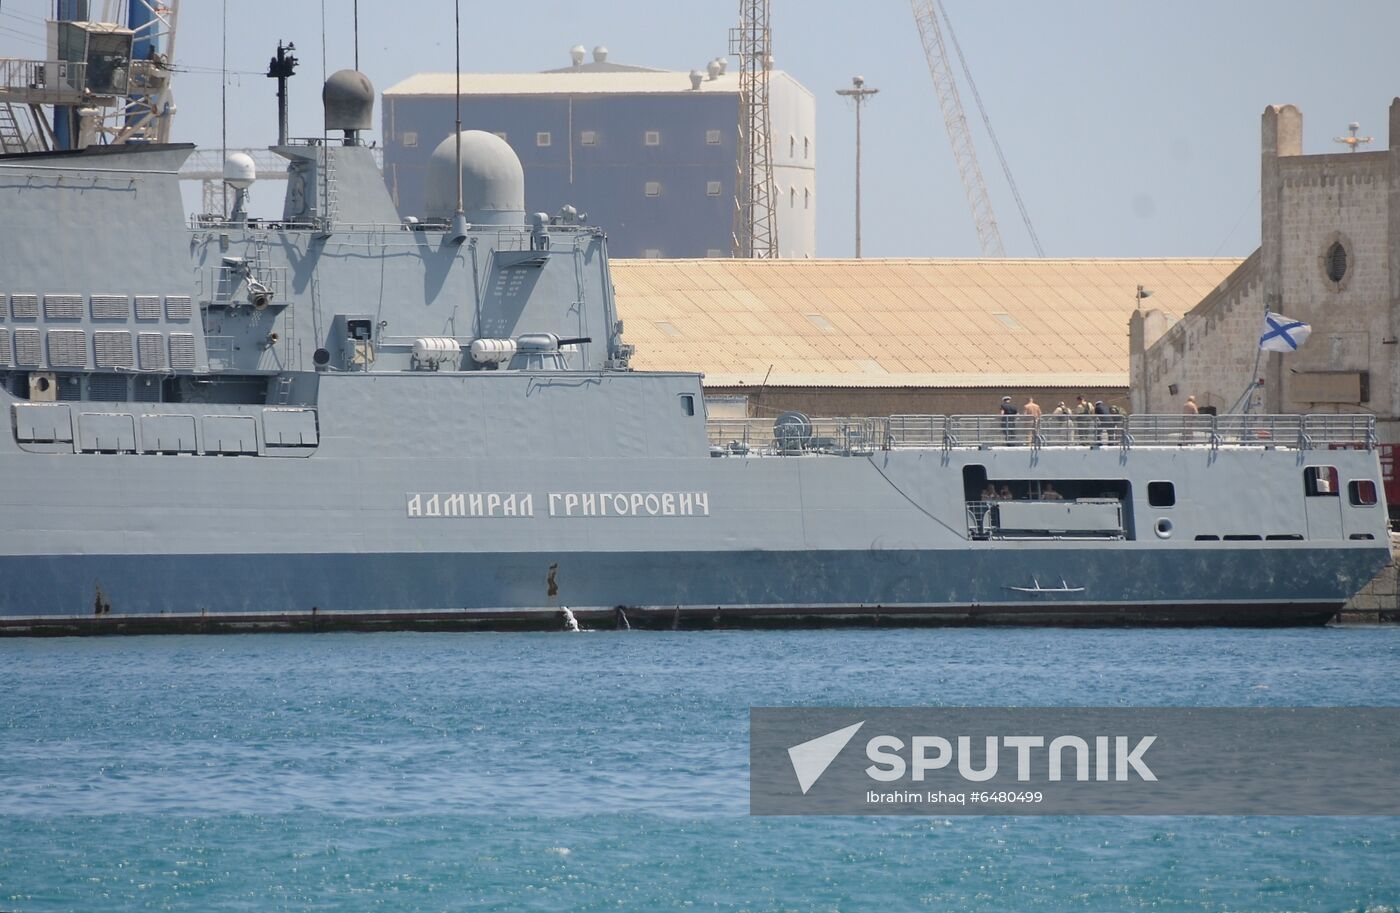 Sudan Russia Admiral Grigorovich Warship